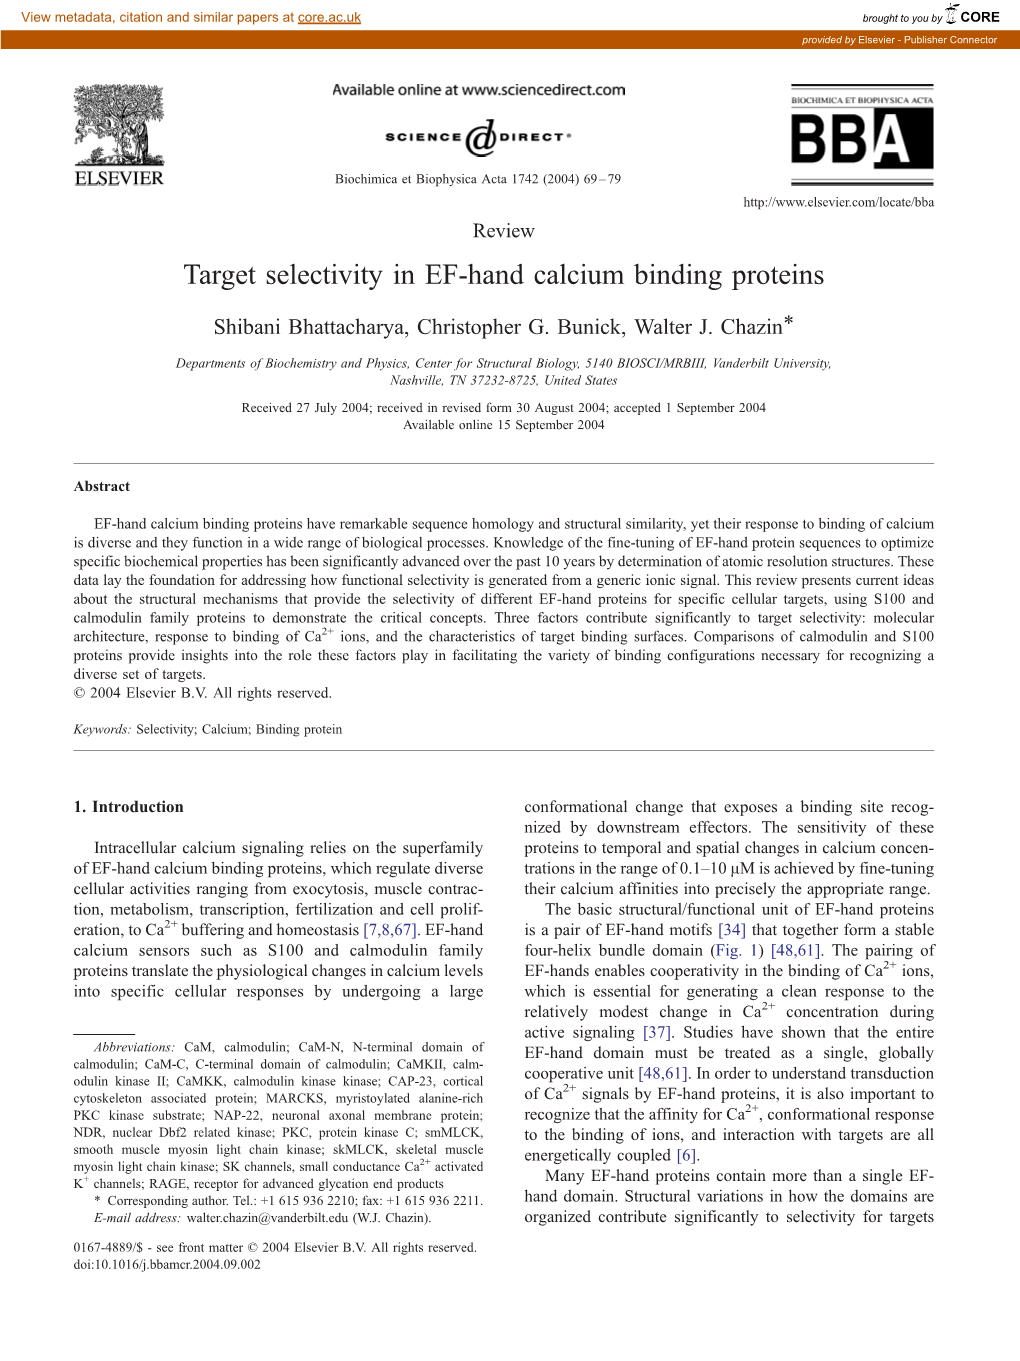 Target Selectivity in EF-Hand Calcium Binding Proteins